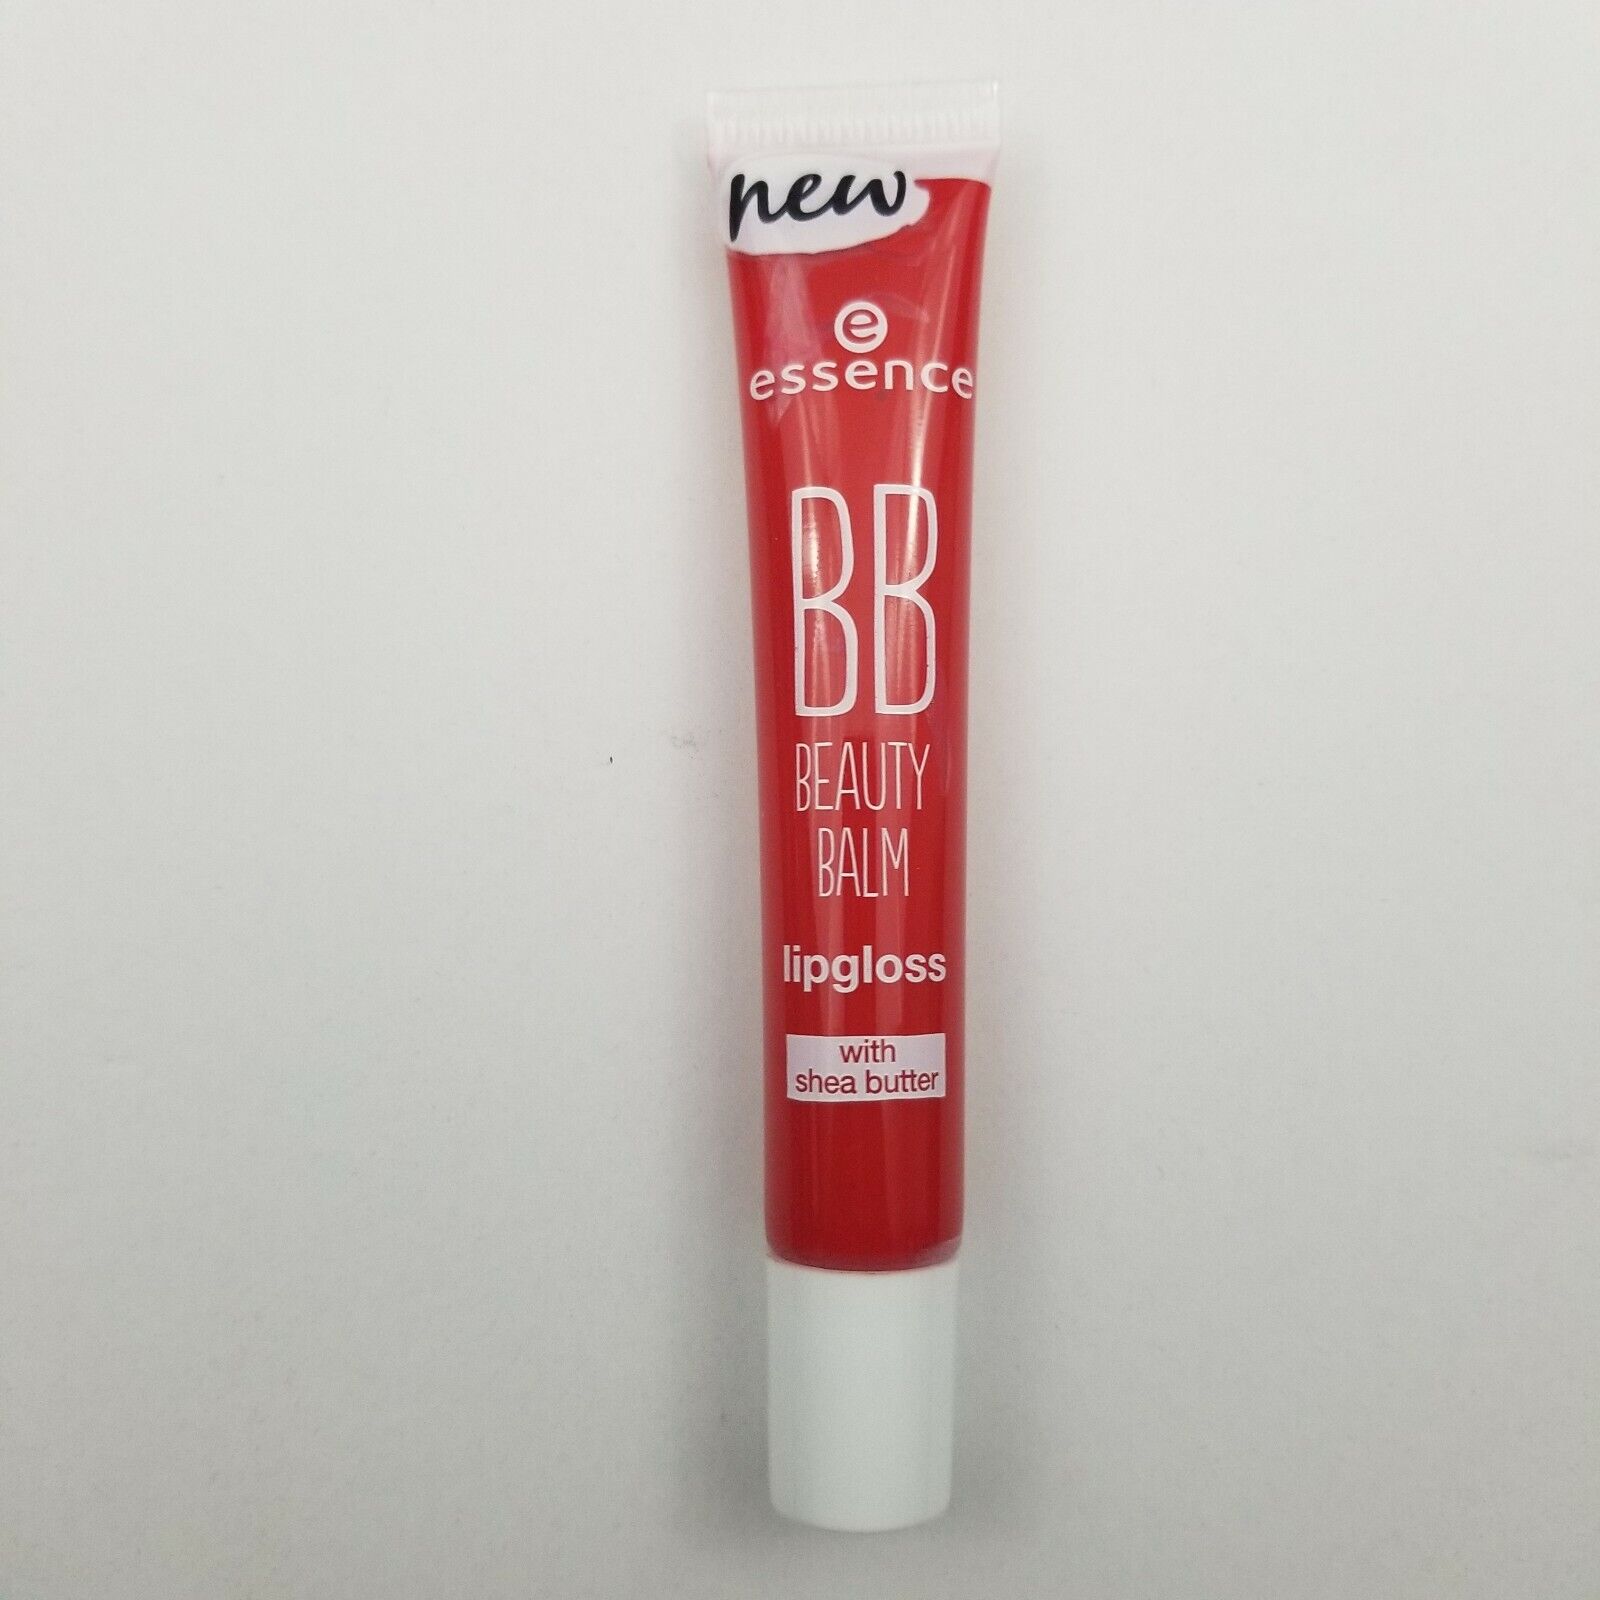 3X Essence BB Beauty Balm Lip Gloss with Shea Butter 0.4 oz 05 Heartbreaker New essence 05 Heartbreaker - фотография #2